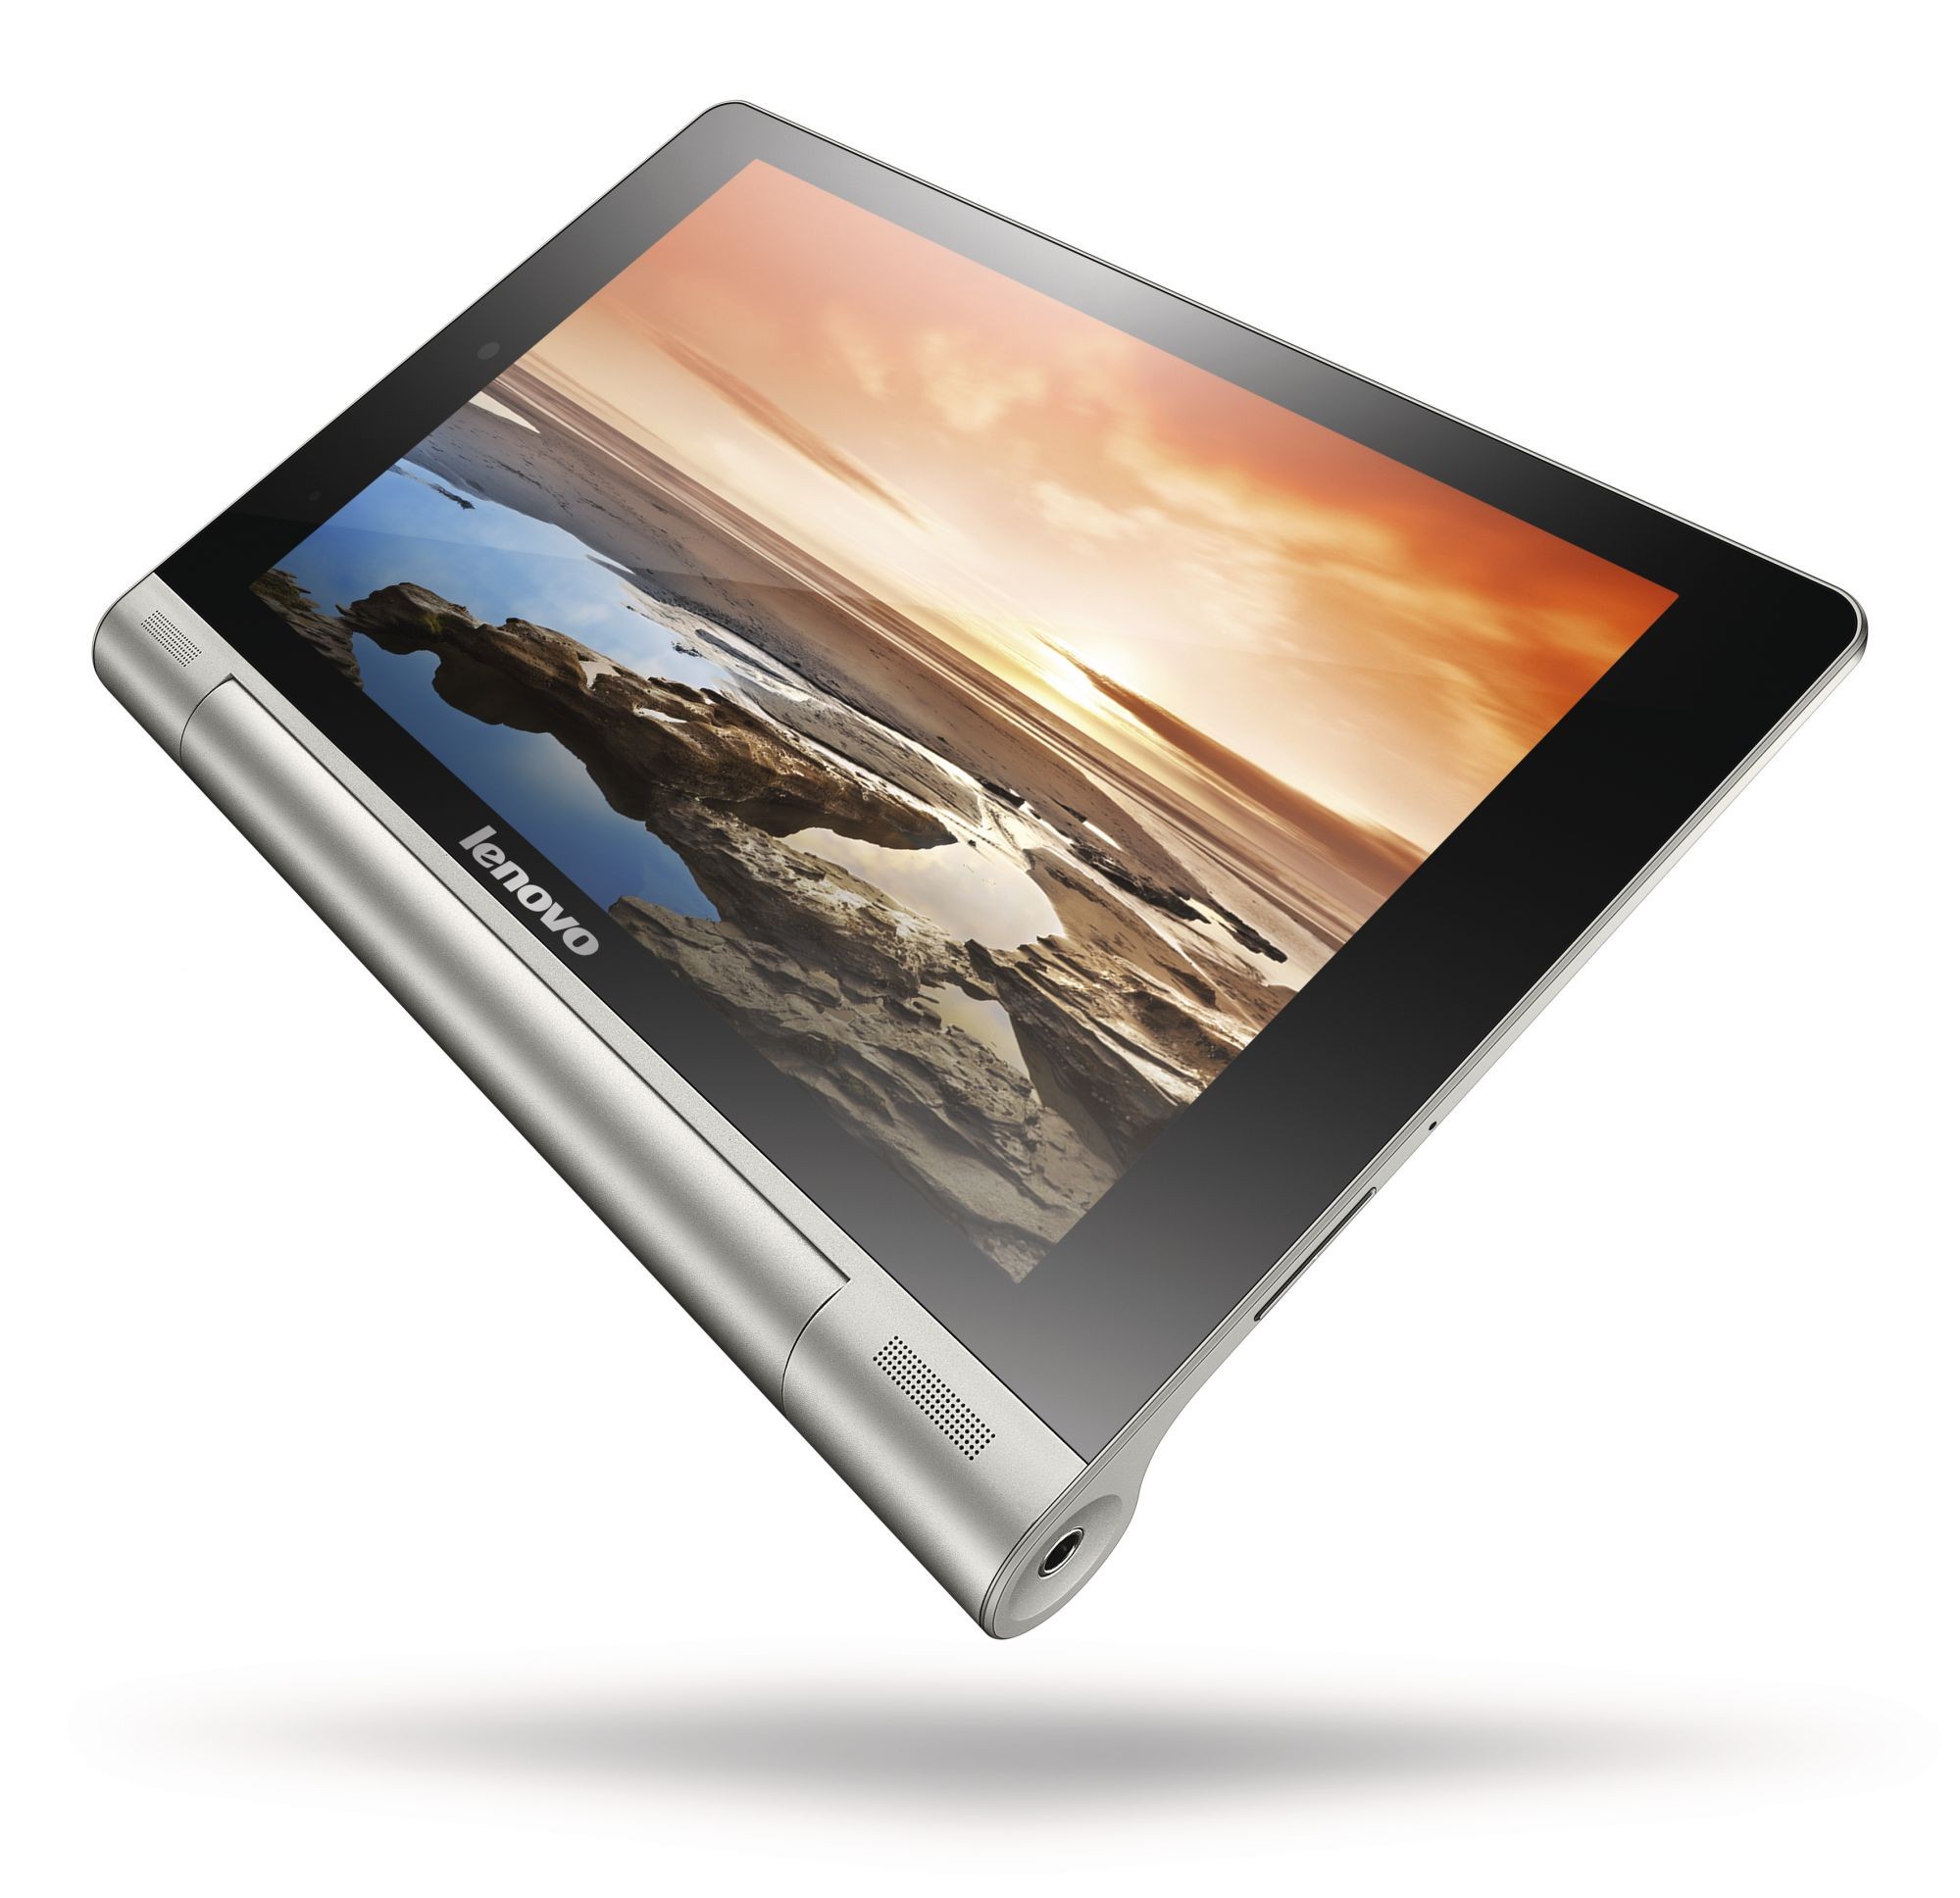 Купить планшет во владимире. Планшет Lenovo Yoga Tablet 8 3 1gb 16gb. Планшет Lenovo Yoga Tablet 8 16gb 3g. Lenovo Yoga Tablet 10 b8000. Lenovo Yoga планшет 10 дюймов.